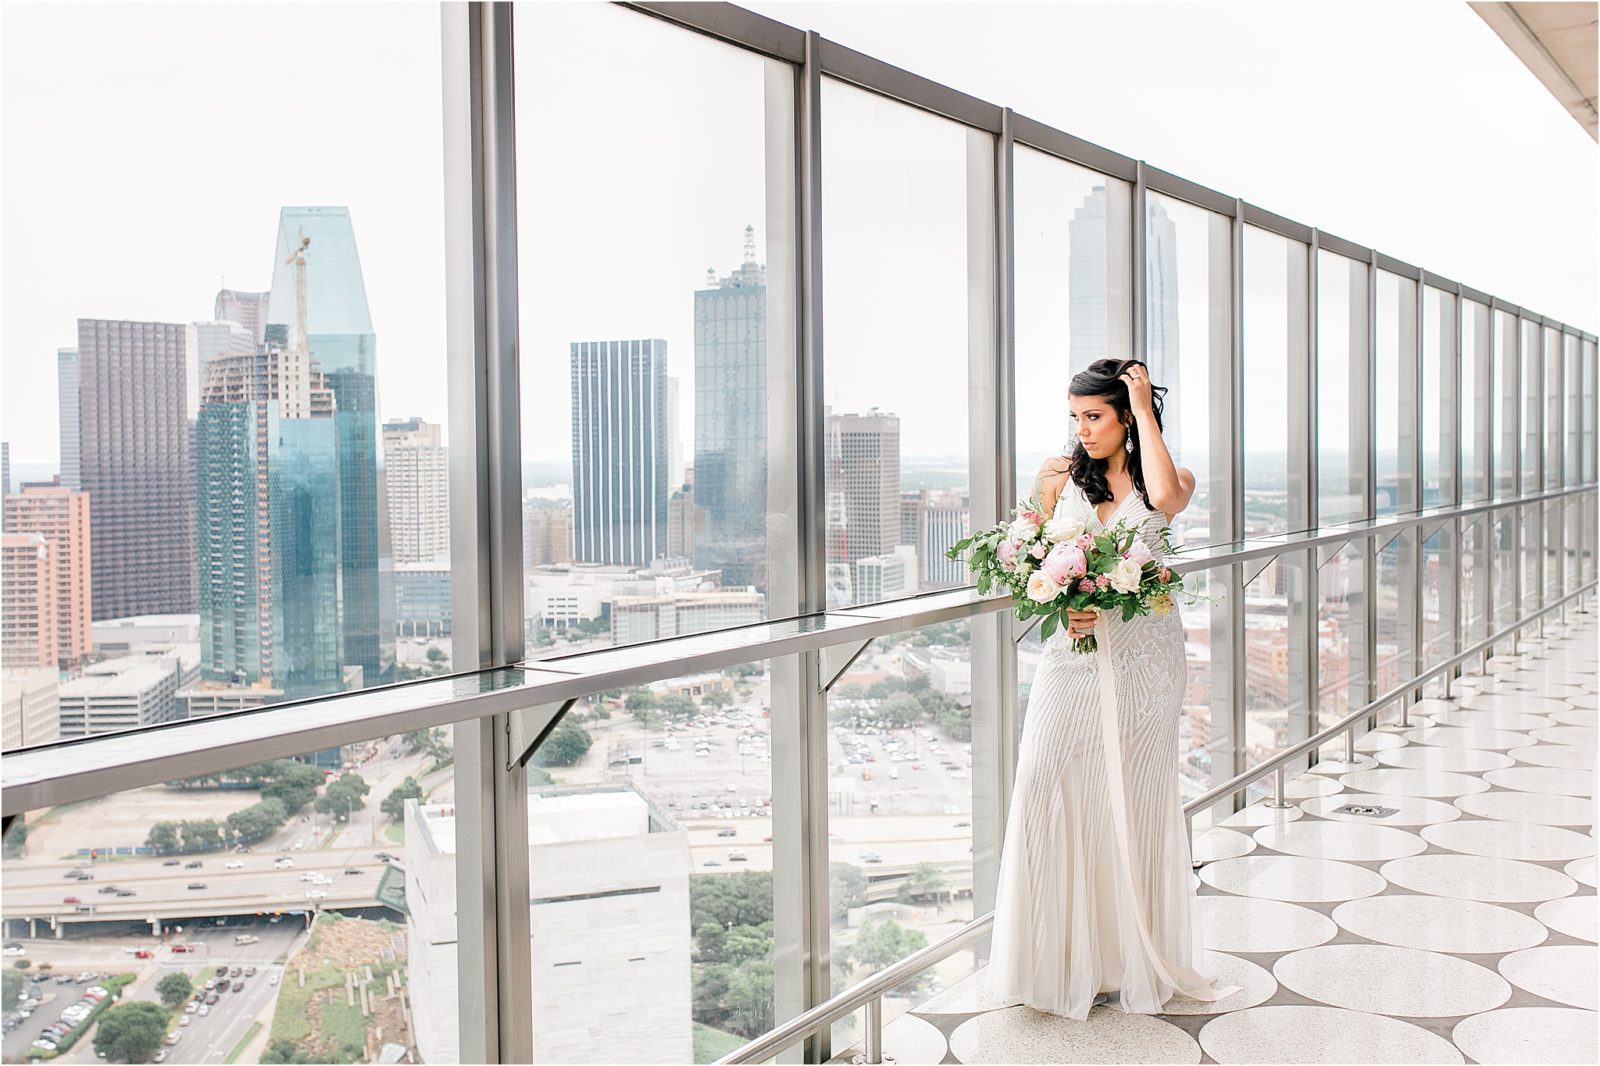 Downtown Dallas Skyline at W Hotel by DFW Wedding Photographer Jillian Hogan 